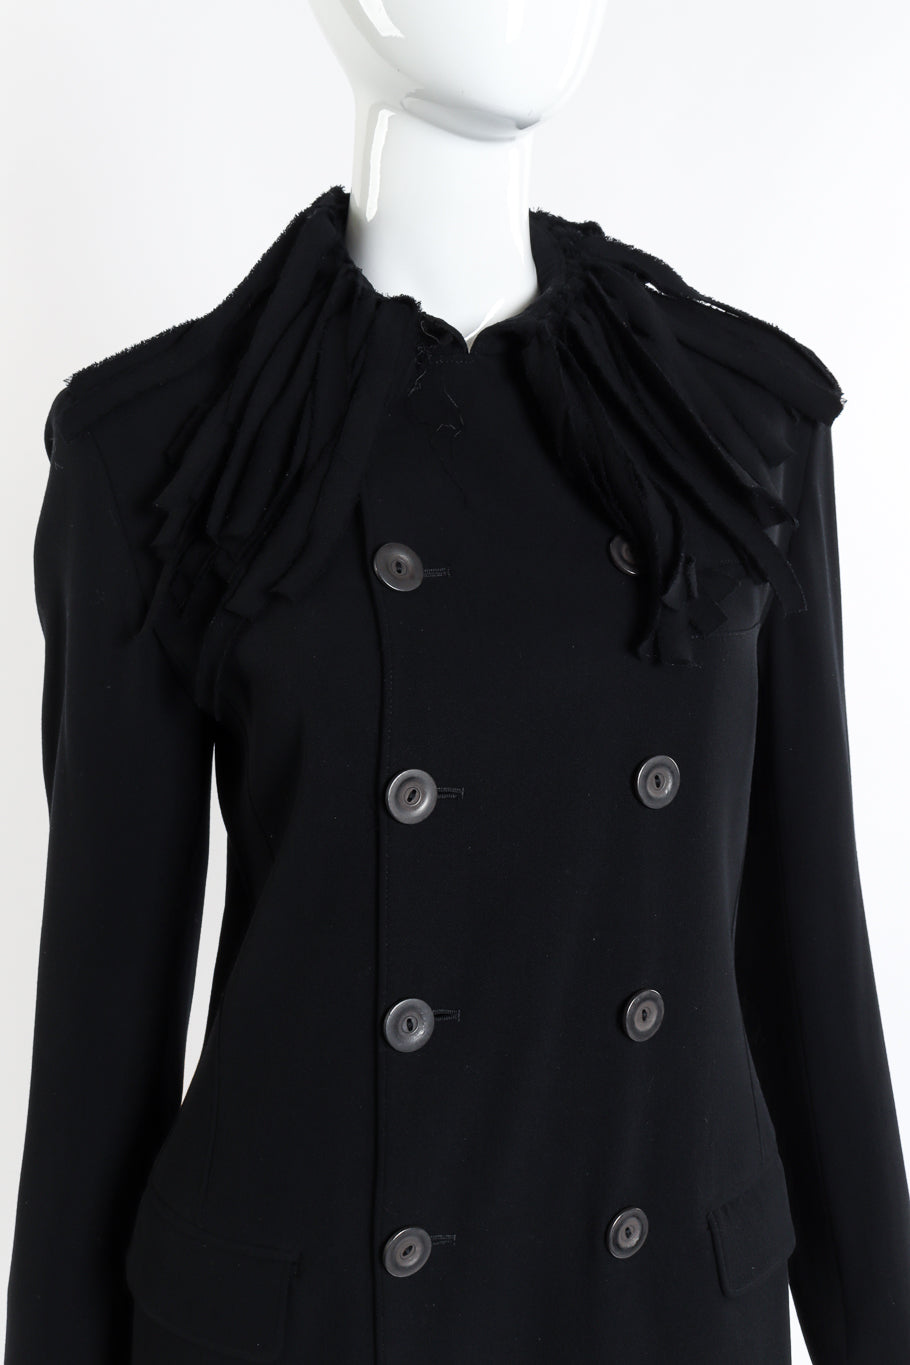 Vintage Jean Paul Gaultier Femme Car Wash Fringe Jacket front on mannequin button closure closeup @recessla